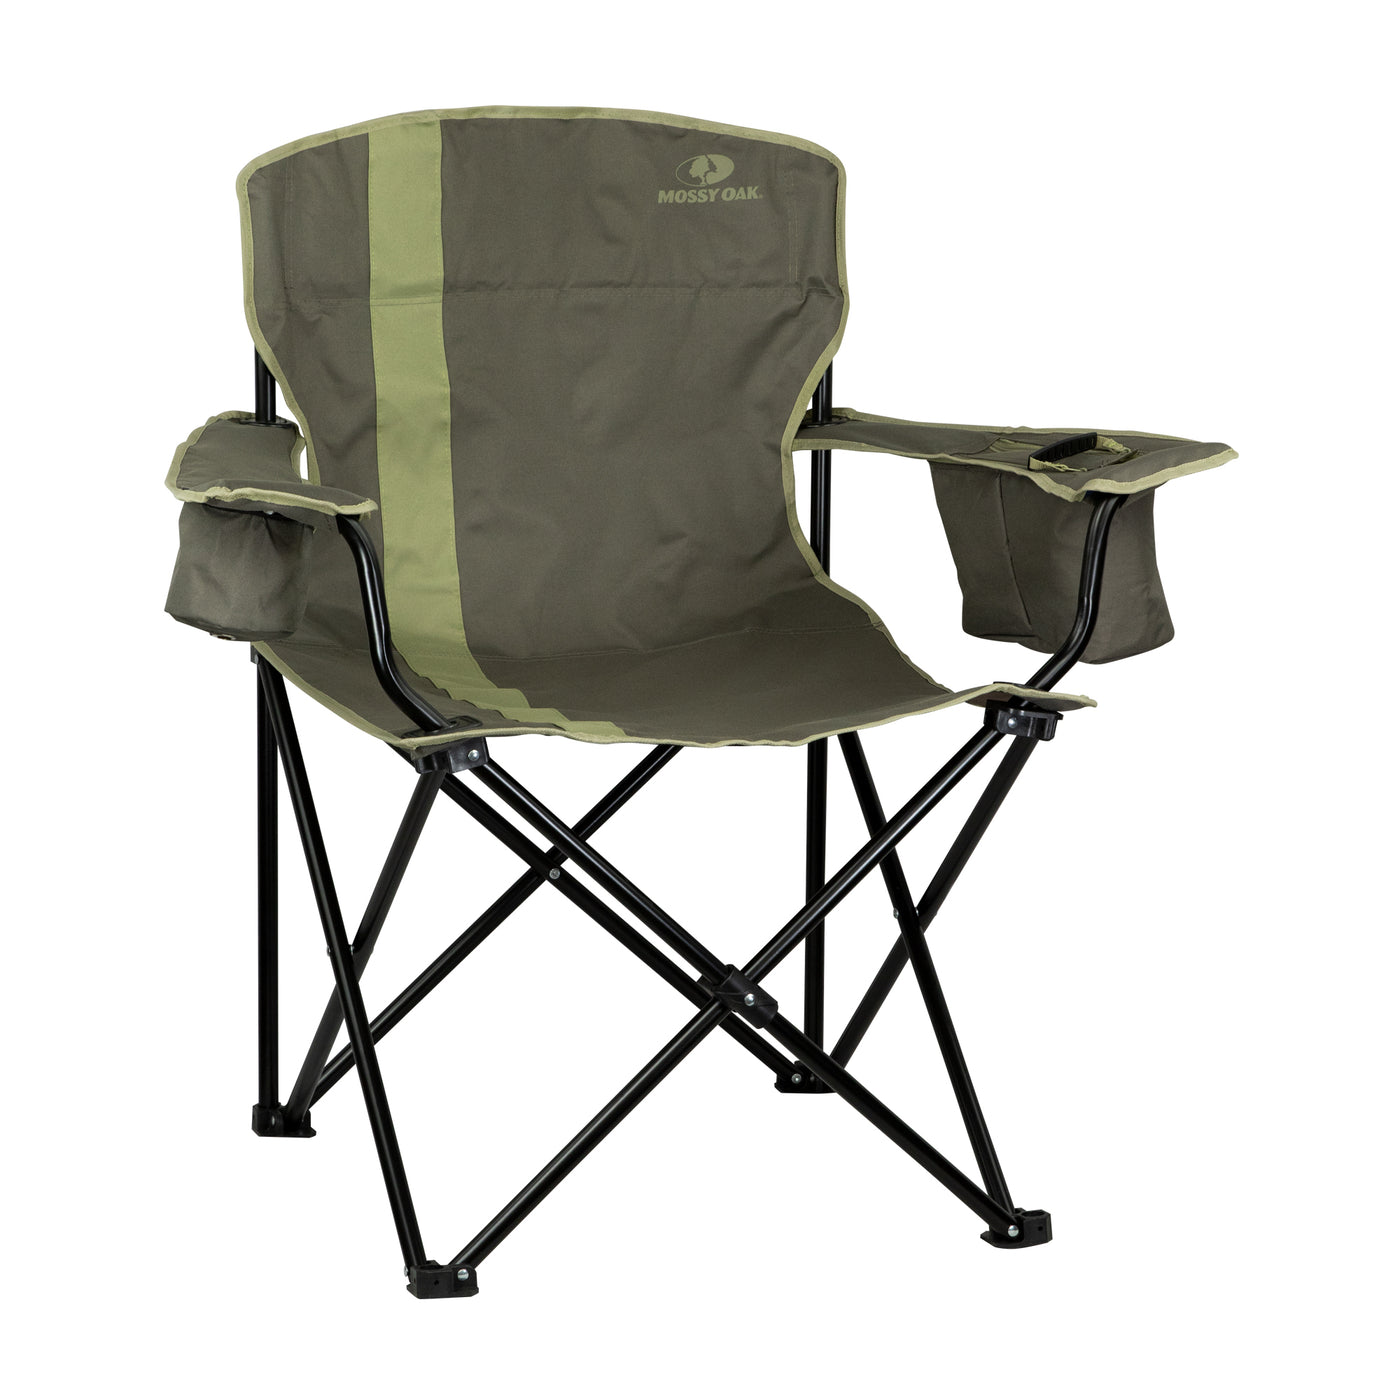 Mossy Oak Heavy Duty Folding Camping Chairs, Lawn Chair